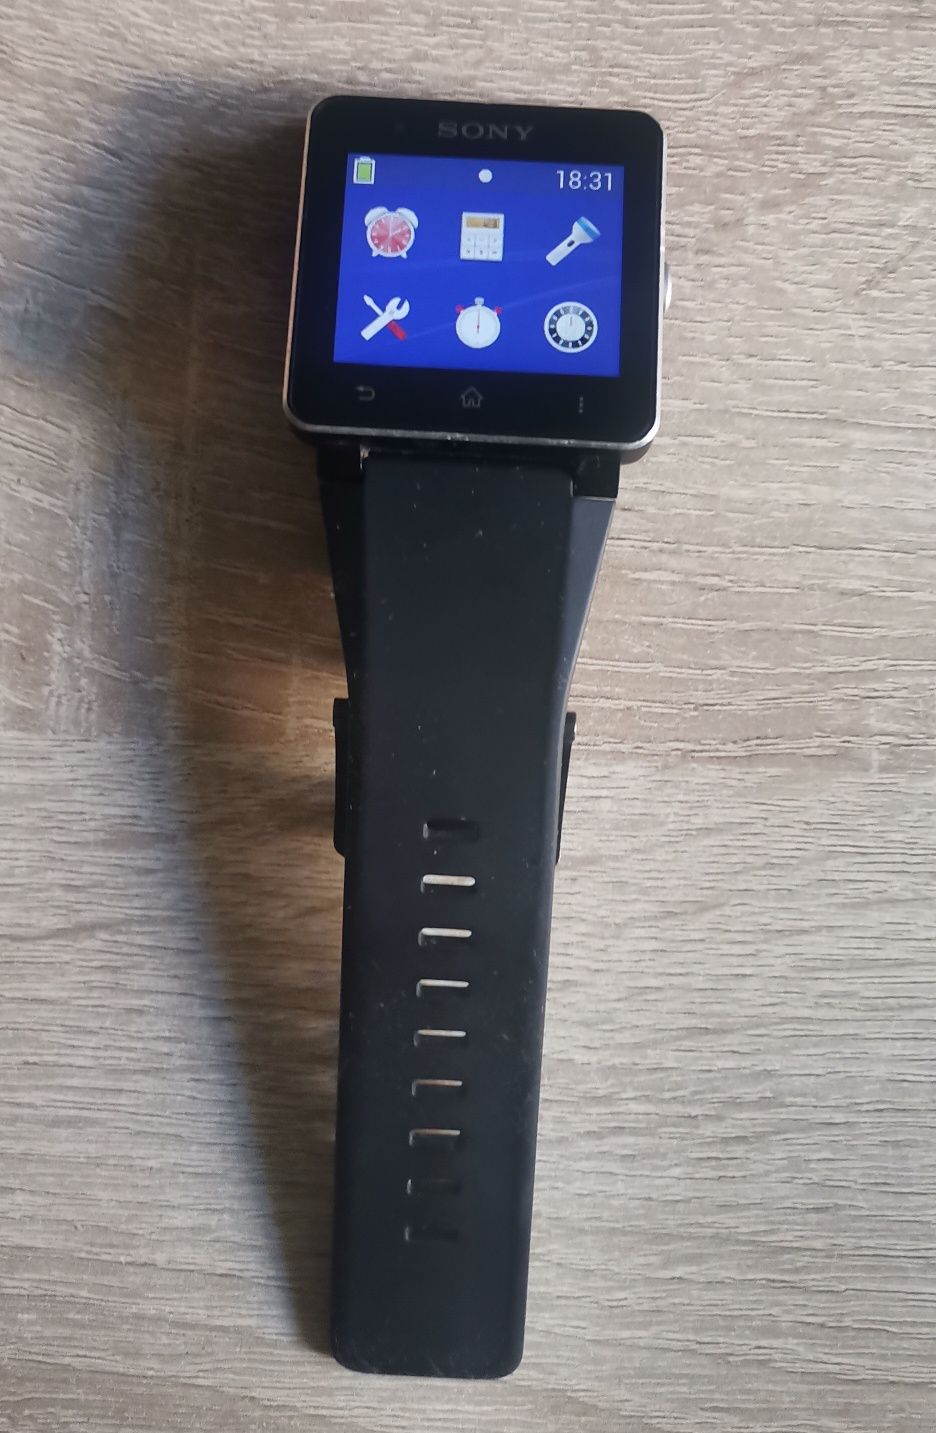 Smart Watch Sony.